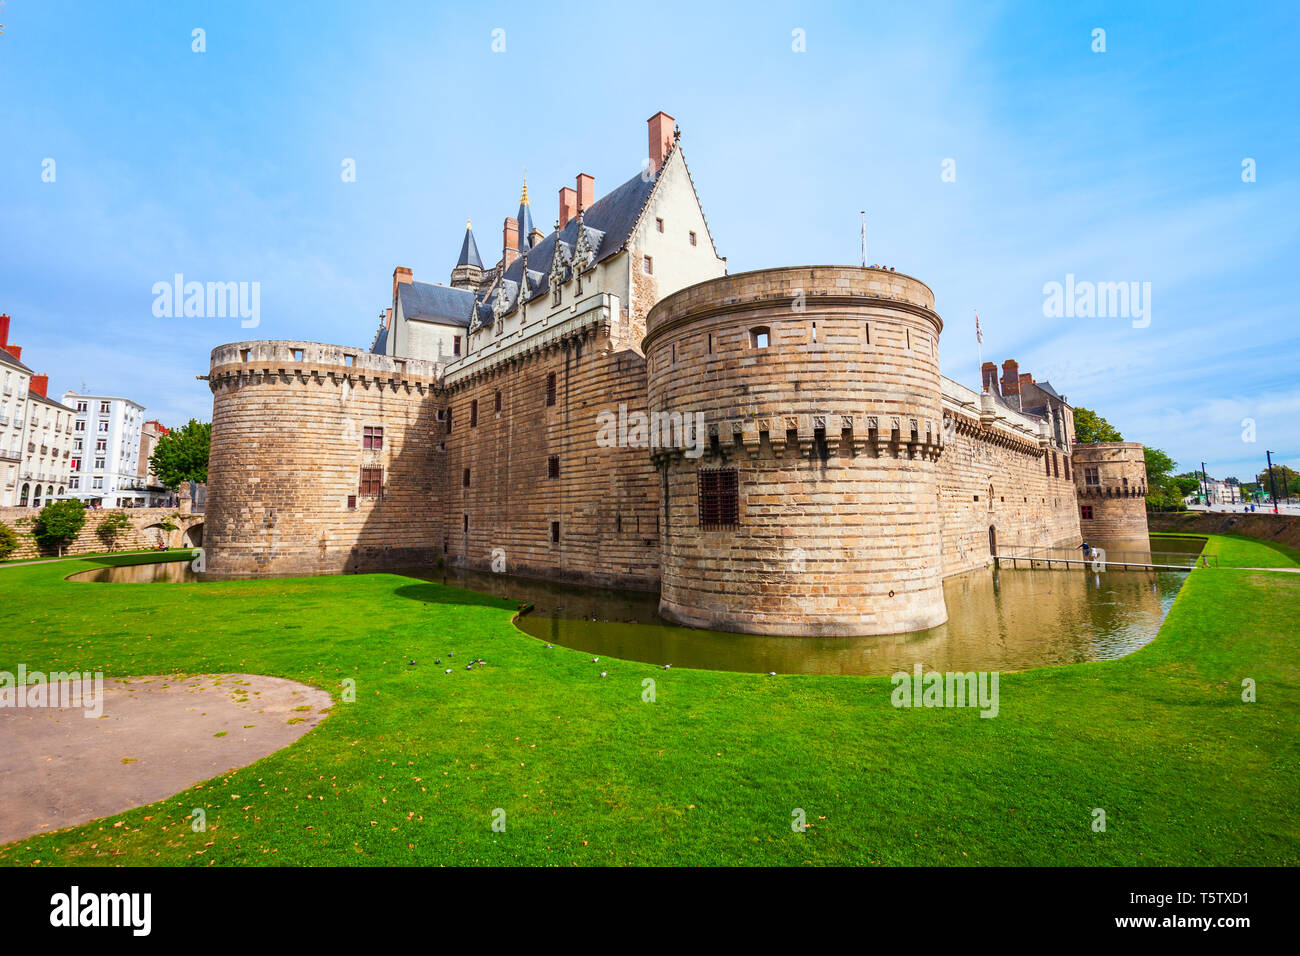 Castillo de los duques de Bretaña o Château des ducs de Bretagne es un castillo en la ciudad de Nantes en Francia Foto de stock